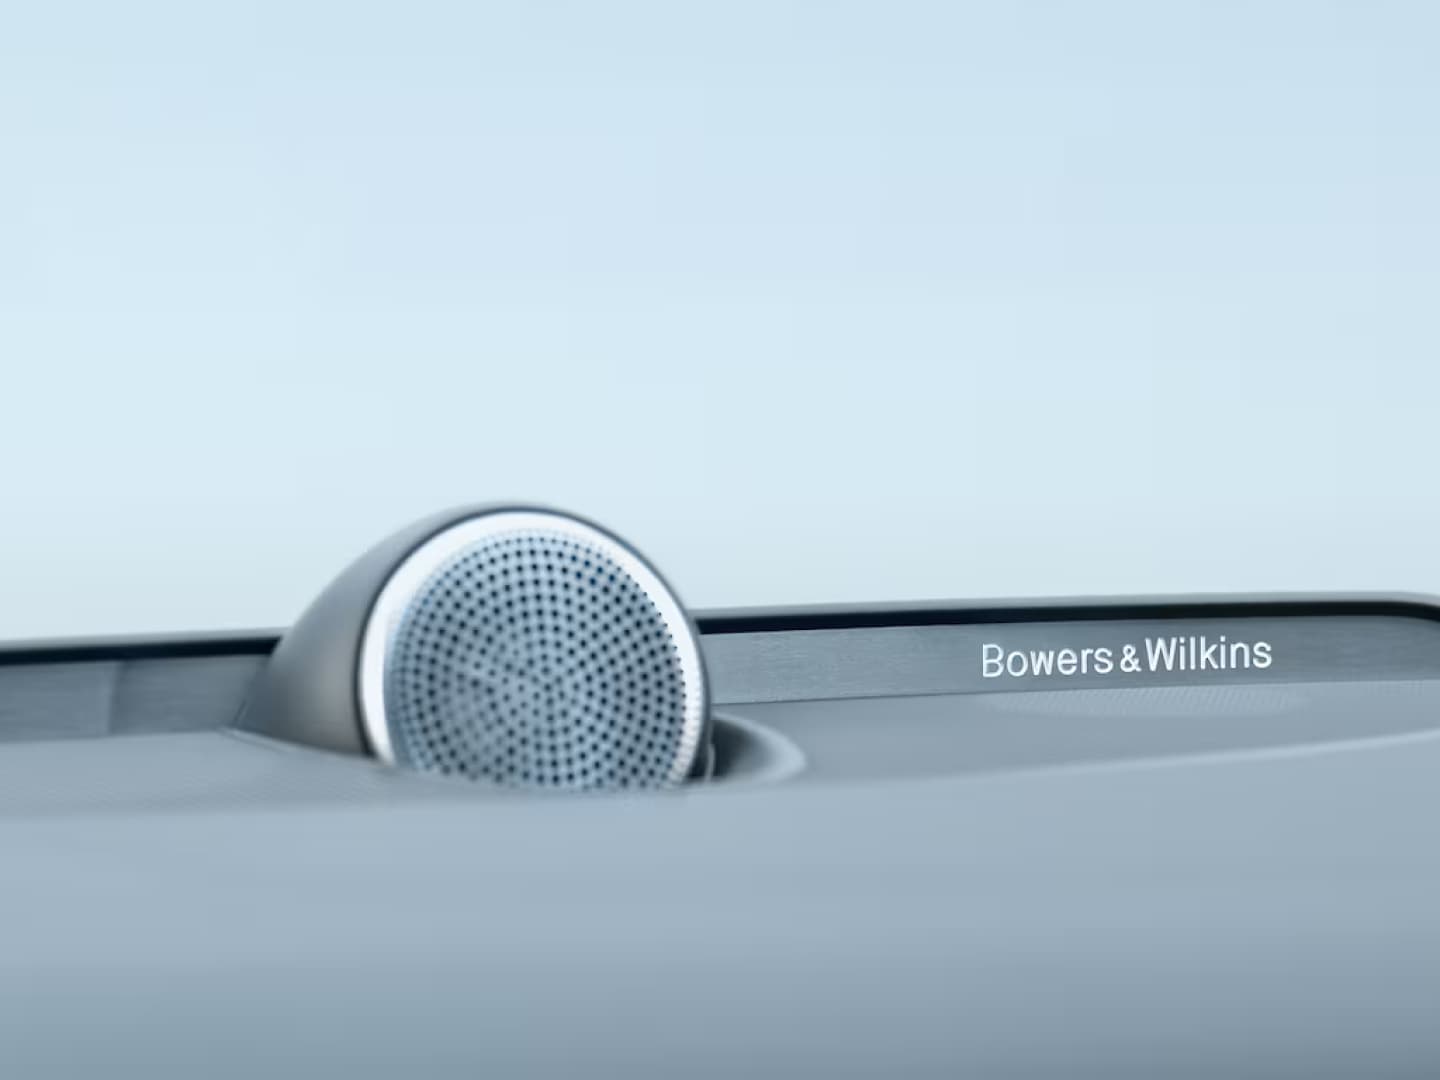 Bowers & Wilkins speakers in the Volvo S60 mild hybrid.